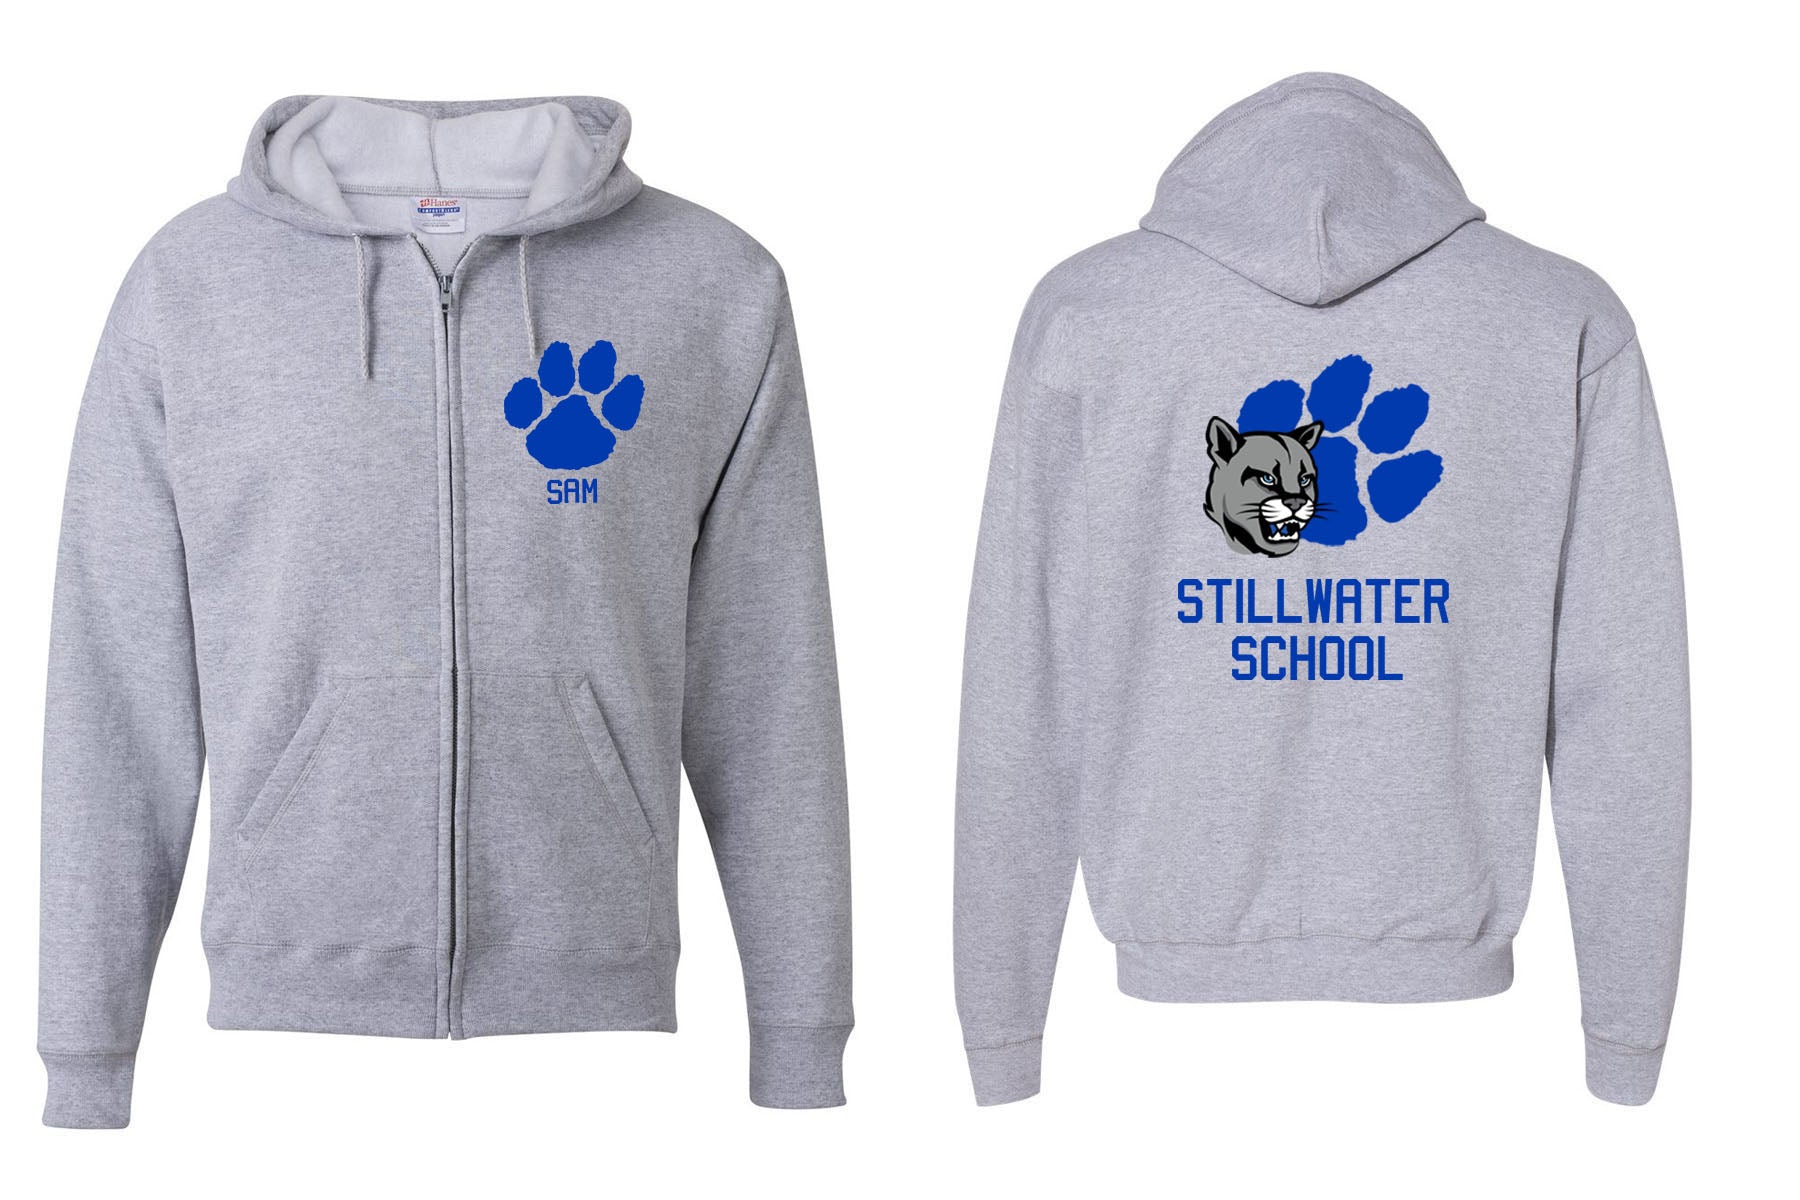 Stillwater design 8 Zip up Sweatshirt